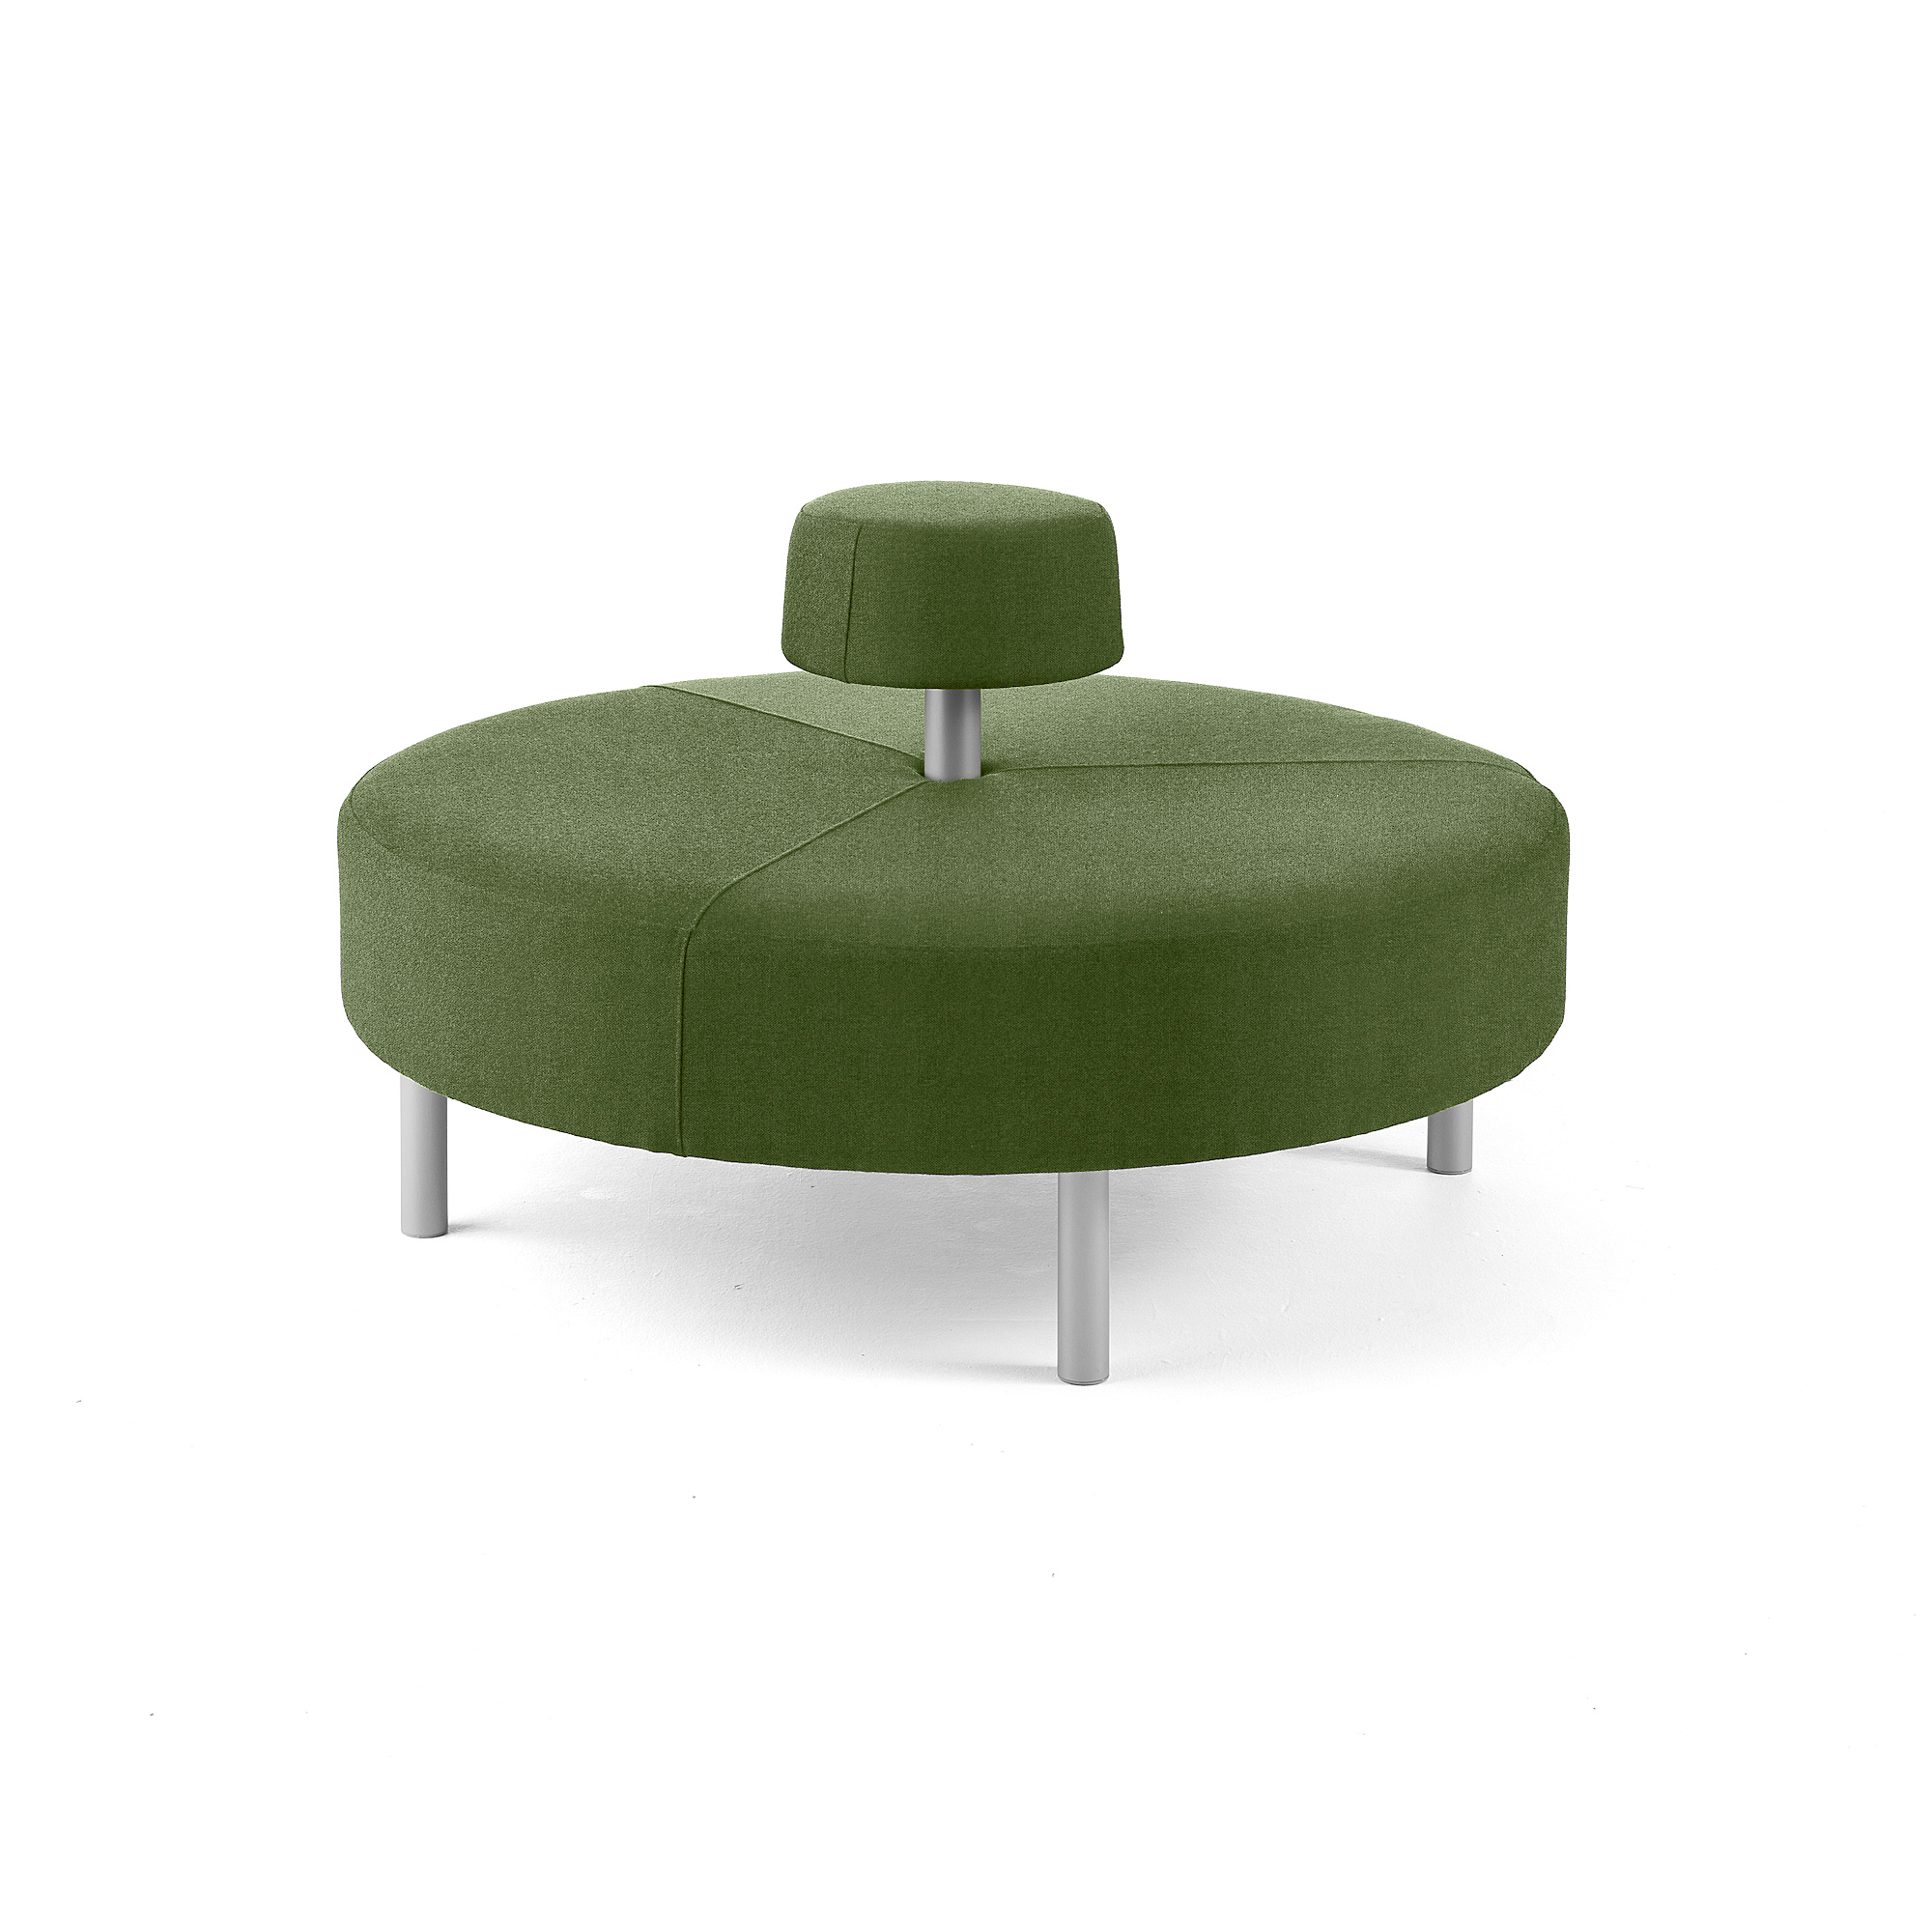 Kulatá sedačka DOT, kruhové opěradlo, Ø 1300 mm, potah Medley, mechově zelená